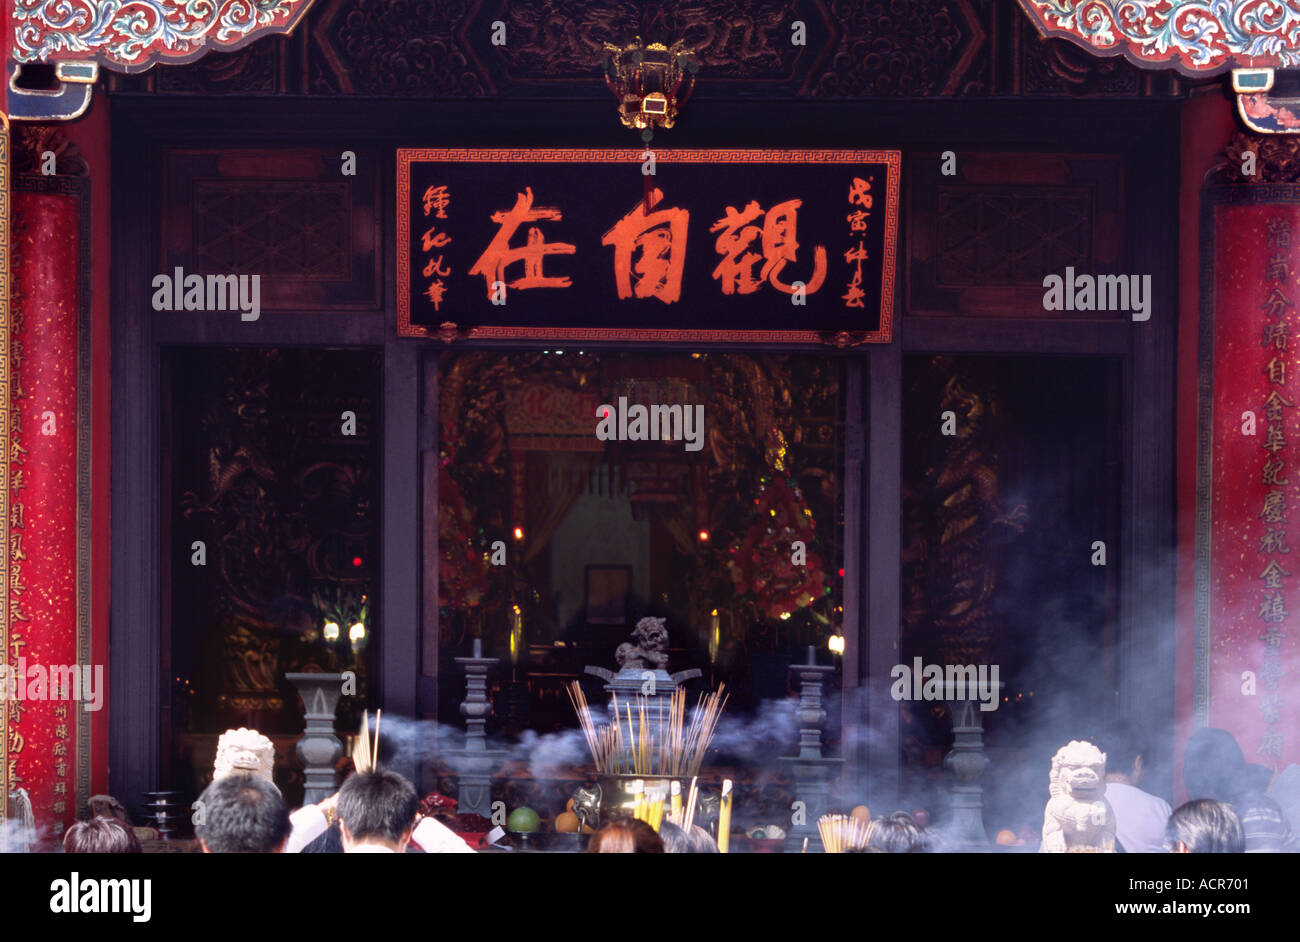 Incense burning at Wong Tai Sin Temple Kowloon 2 Stock Photo